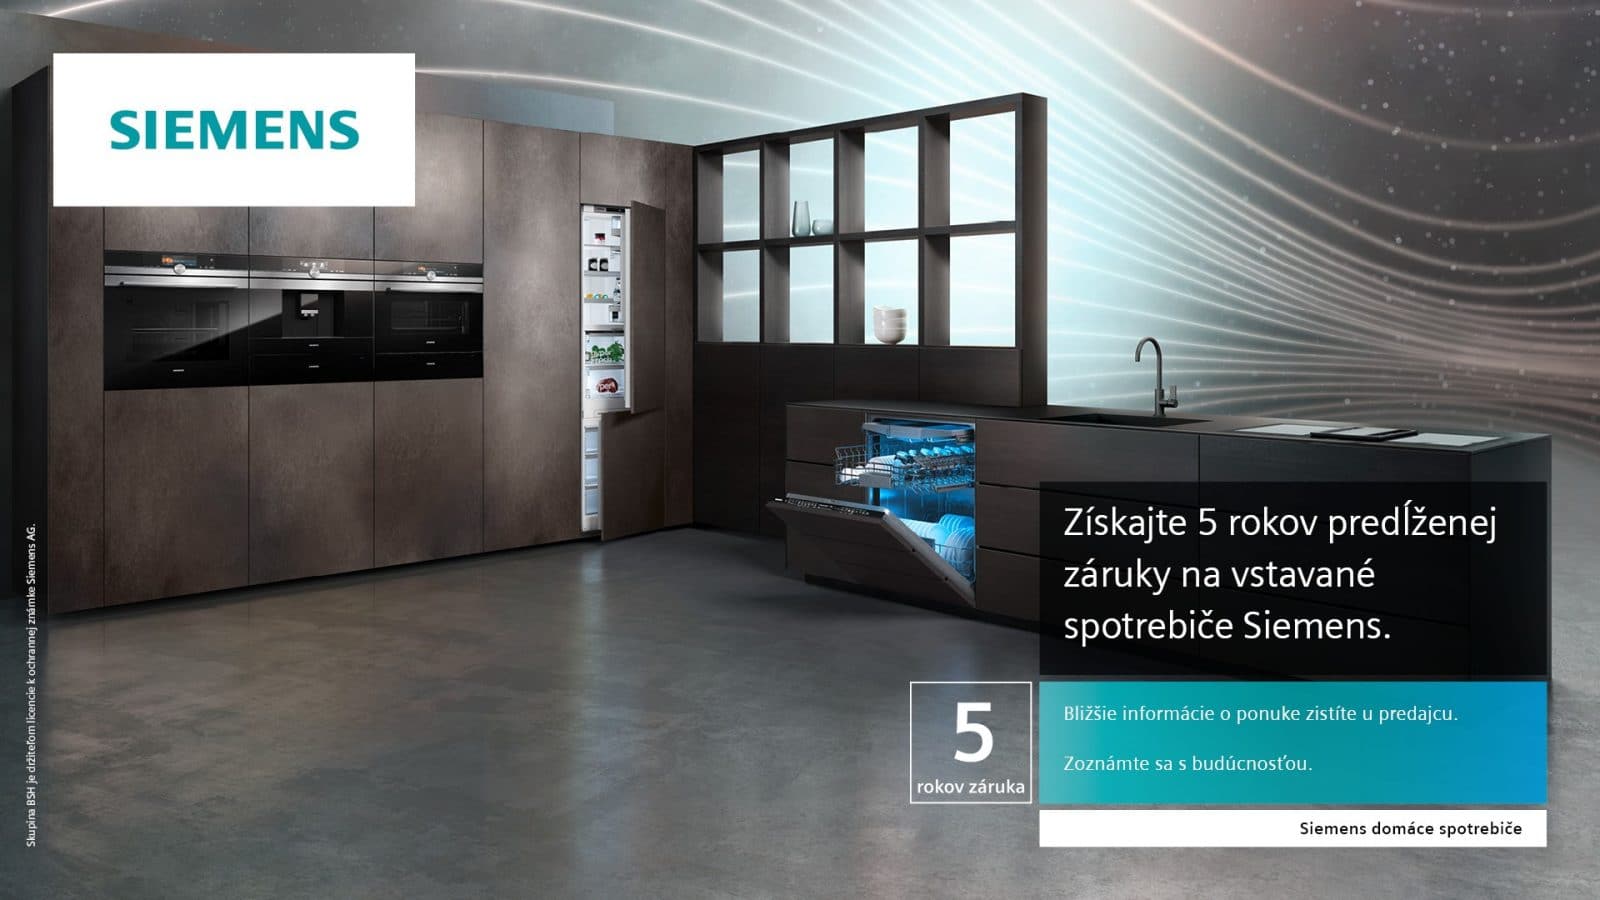 Spotrebiče Siemens s technológiou Home Connect a predĺženou 5 ročnou zárukou v inspire design